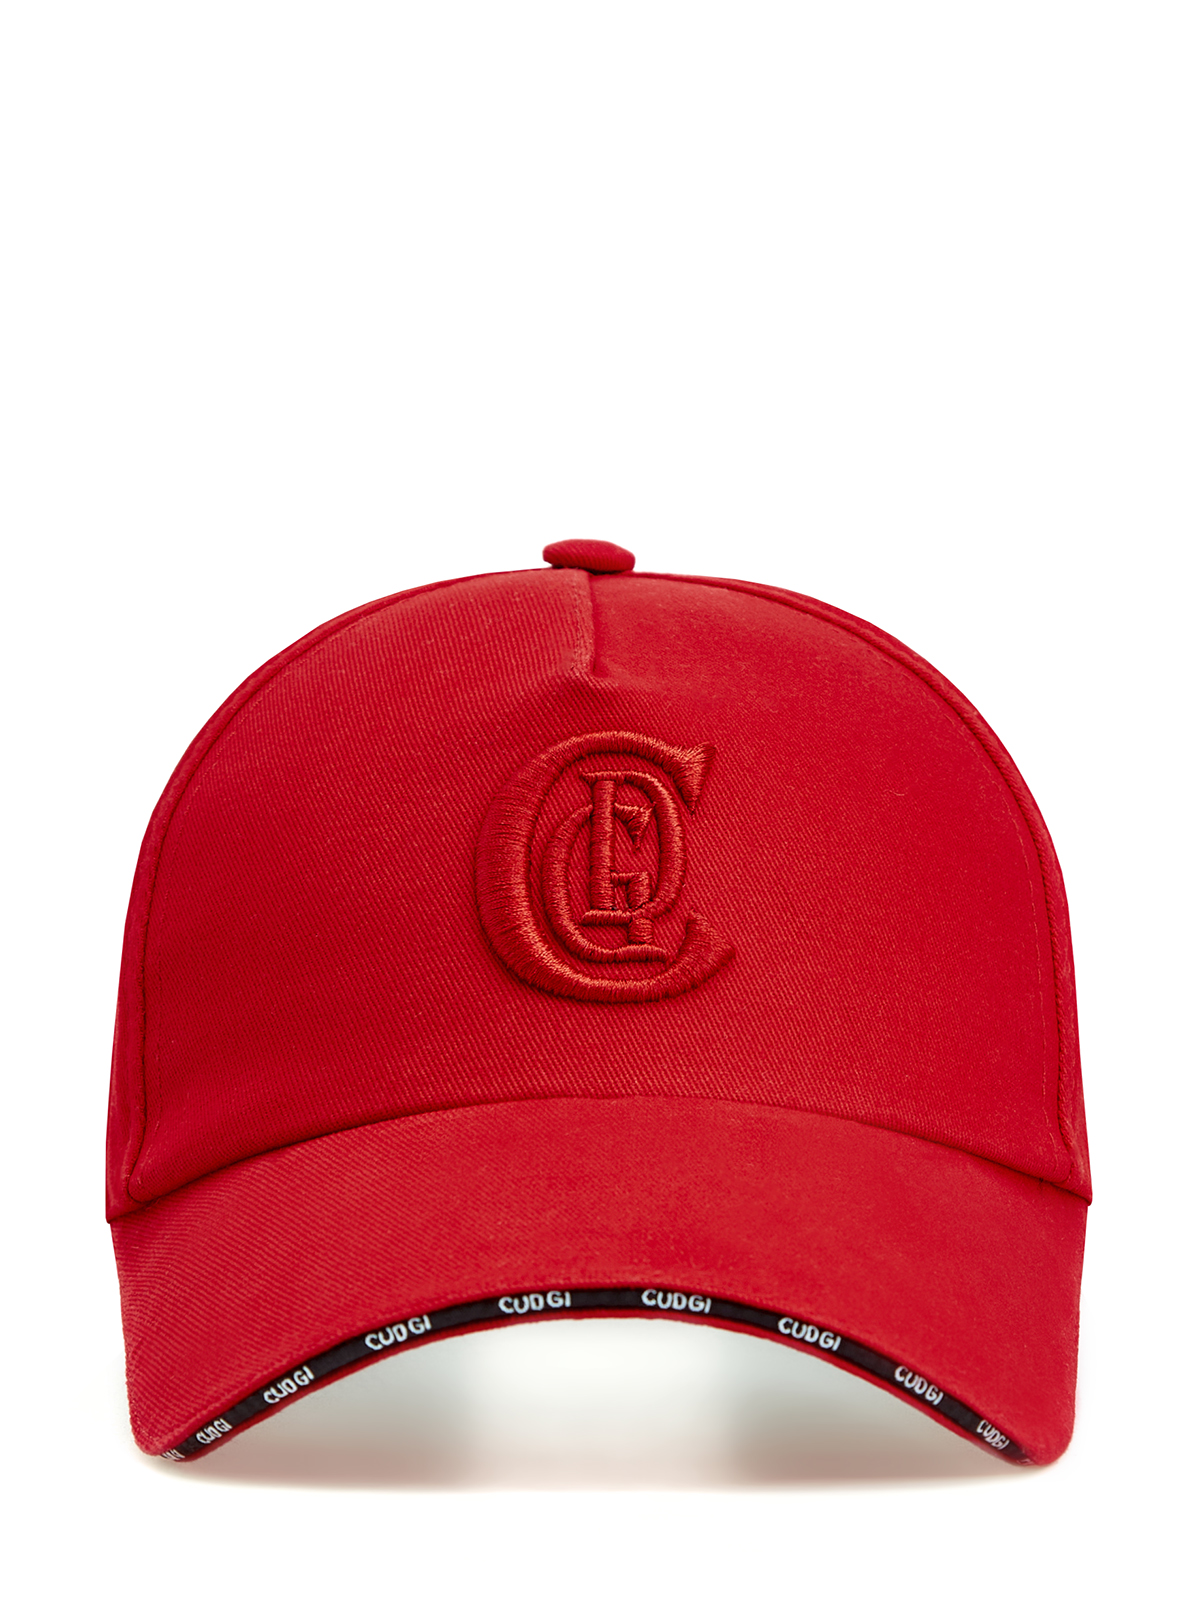 Бейсболка из хлопкового габардина с объемным вышитым логотипом CUDGI, цвет красный, размер 58;59